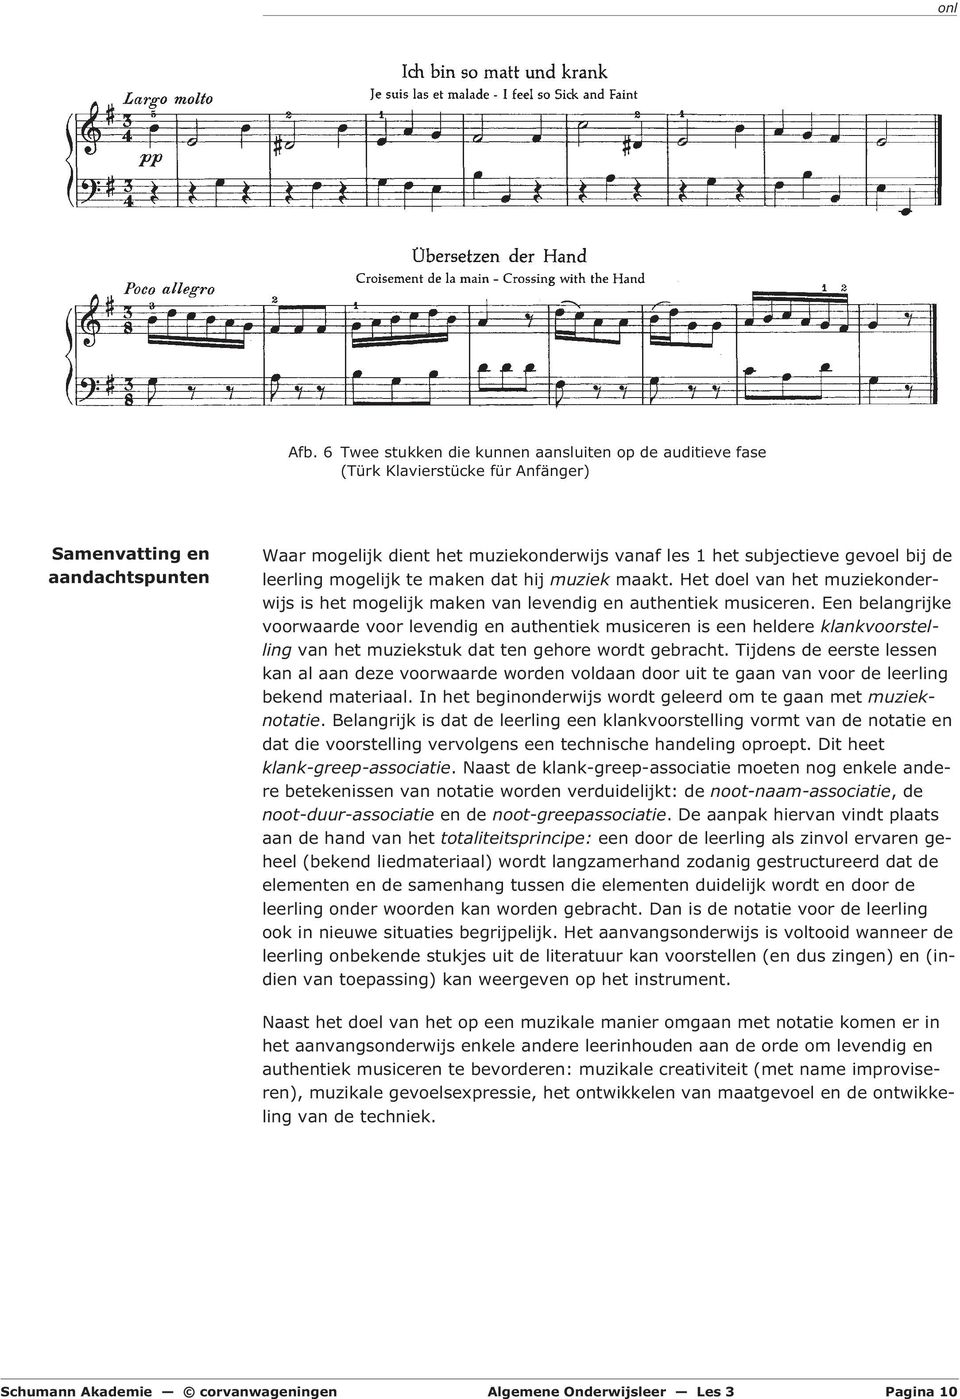 Een belangrijke voorwaarde voor levendig en authentiek musiceren is een heldere klankvoorstelling van het muziekstuk dat ten gehore wordt gebracht.